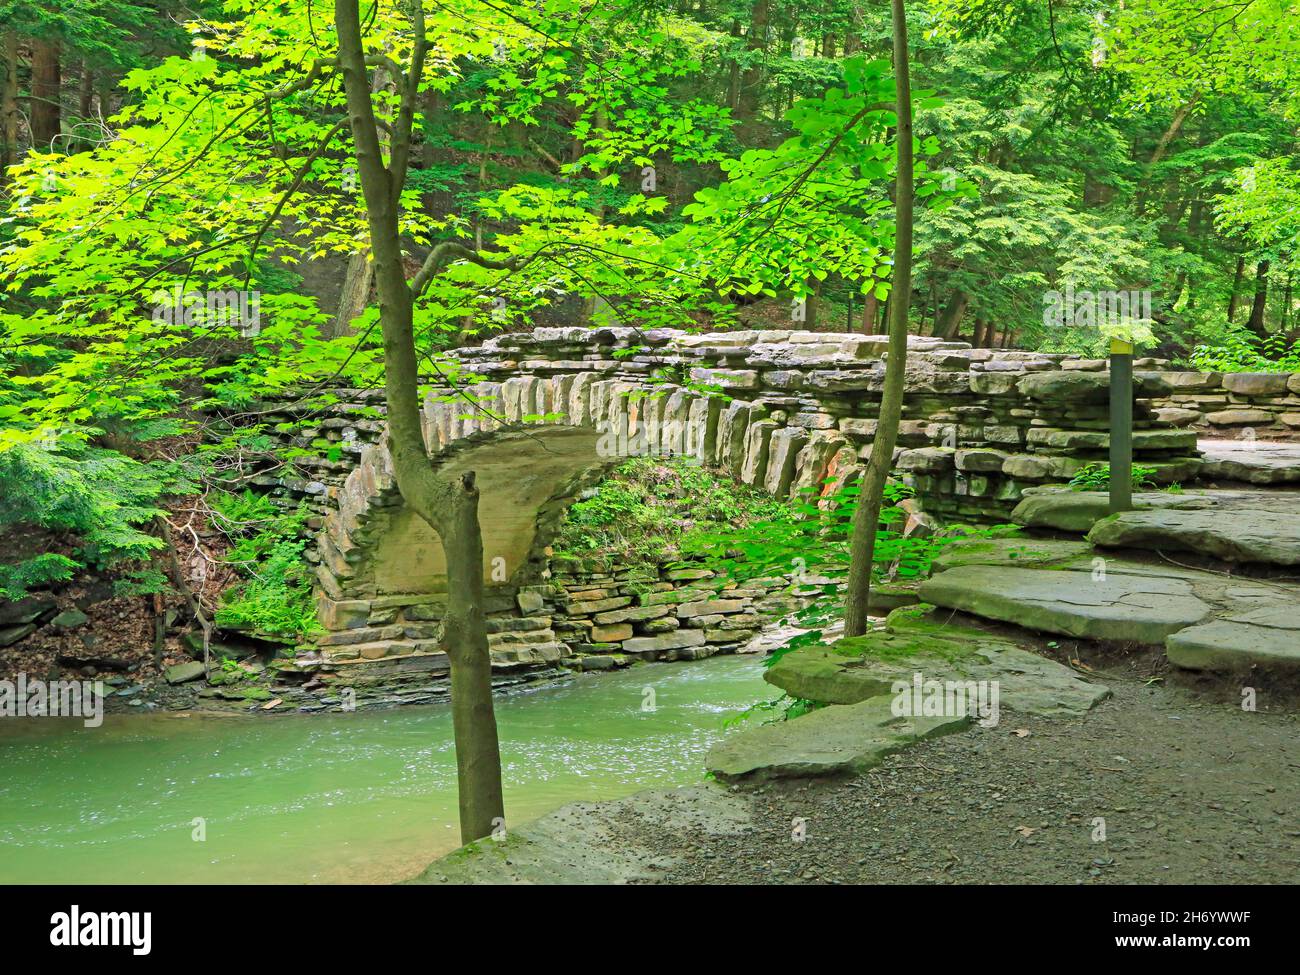 Stony bridge in Stony Brook SP, New York Stock Photo